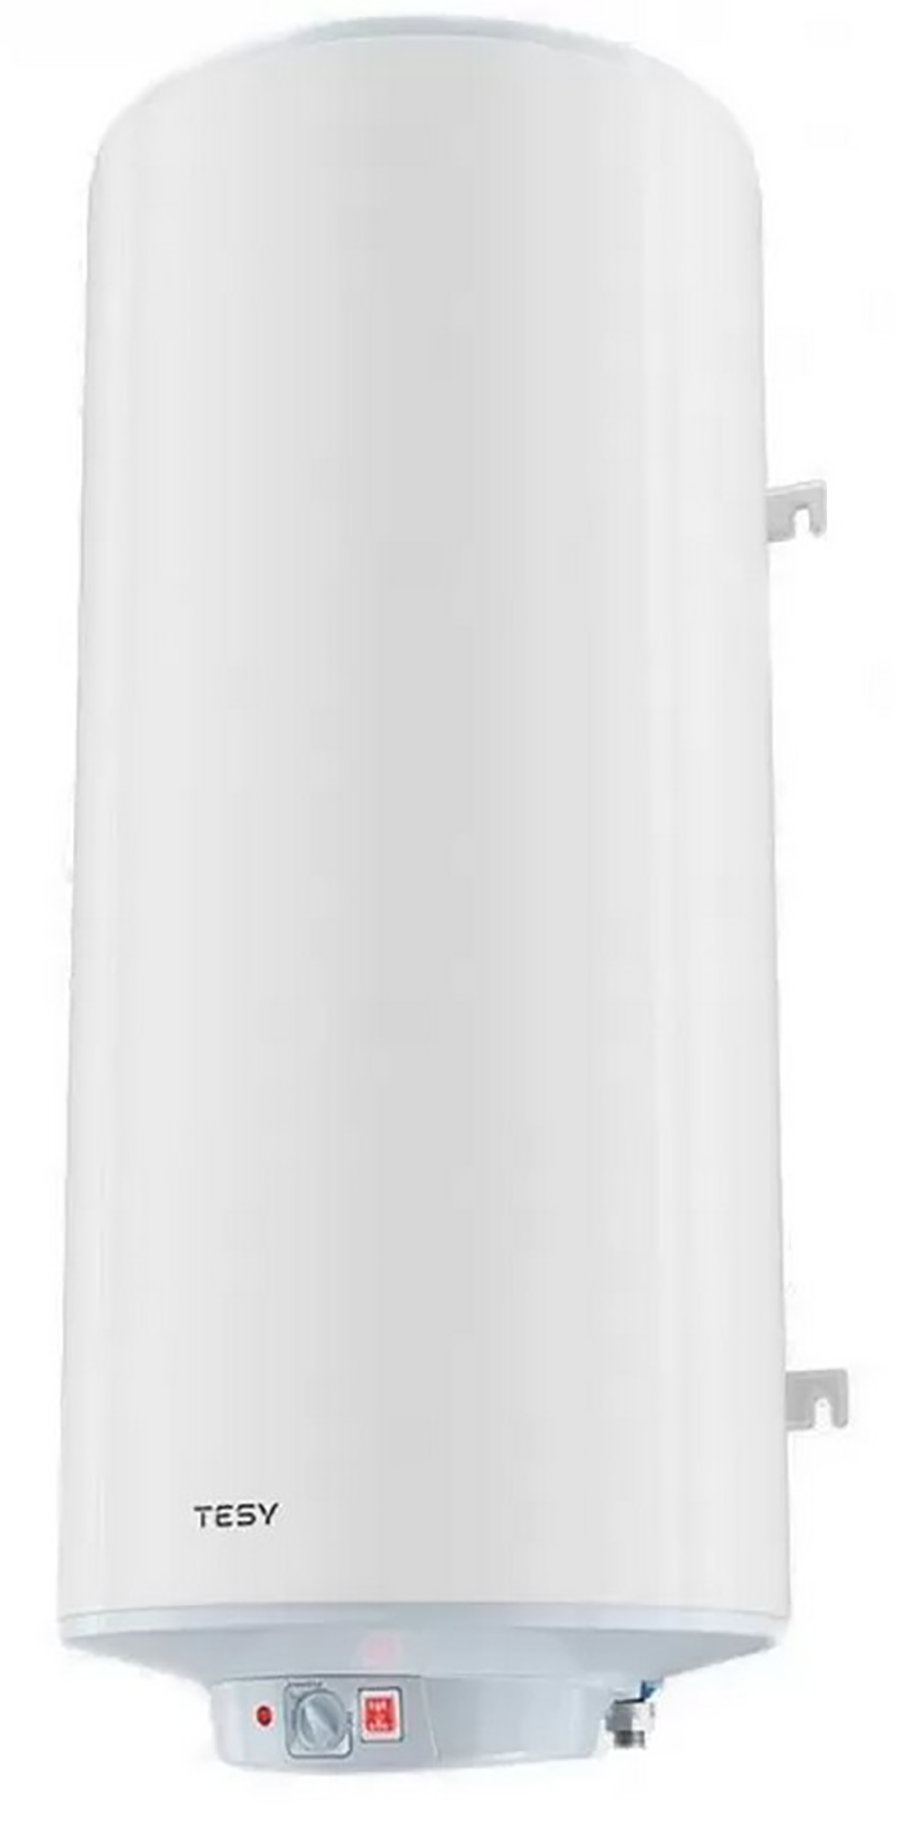 Комбинированный водонагреватель Tesy GCV10S 2005624C D06 S2RP в интернет-магазине, главное фото